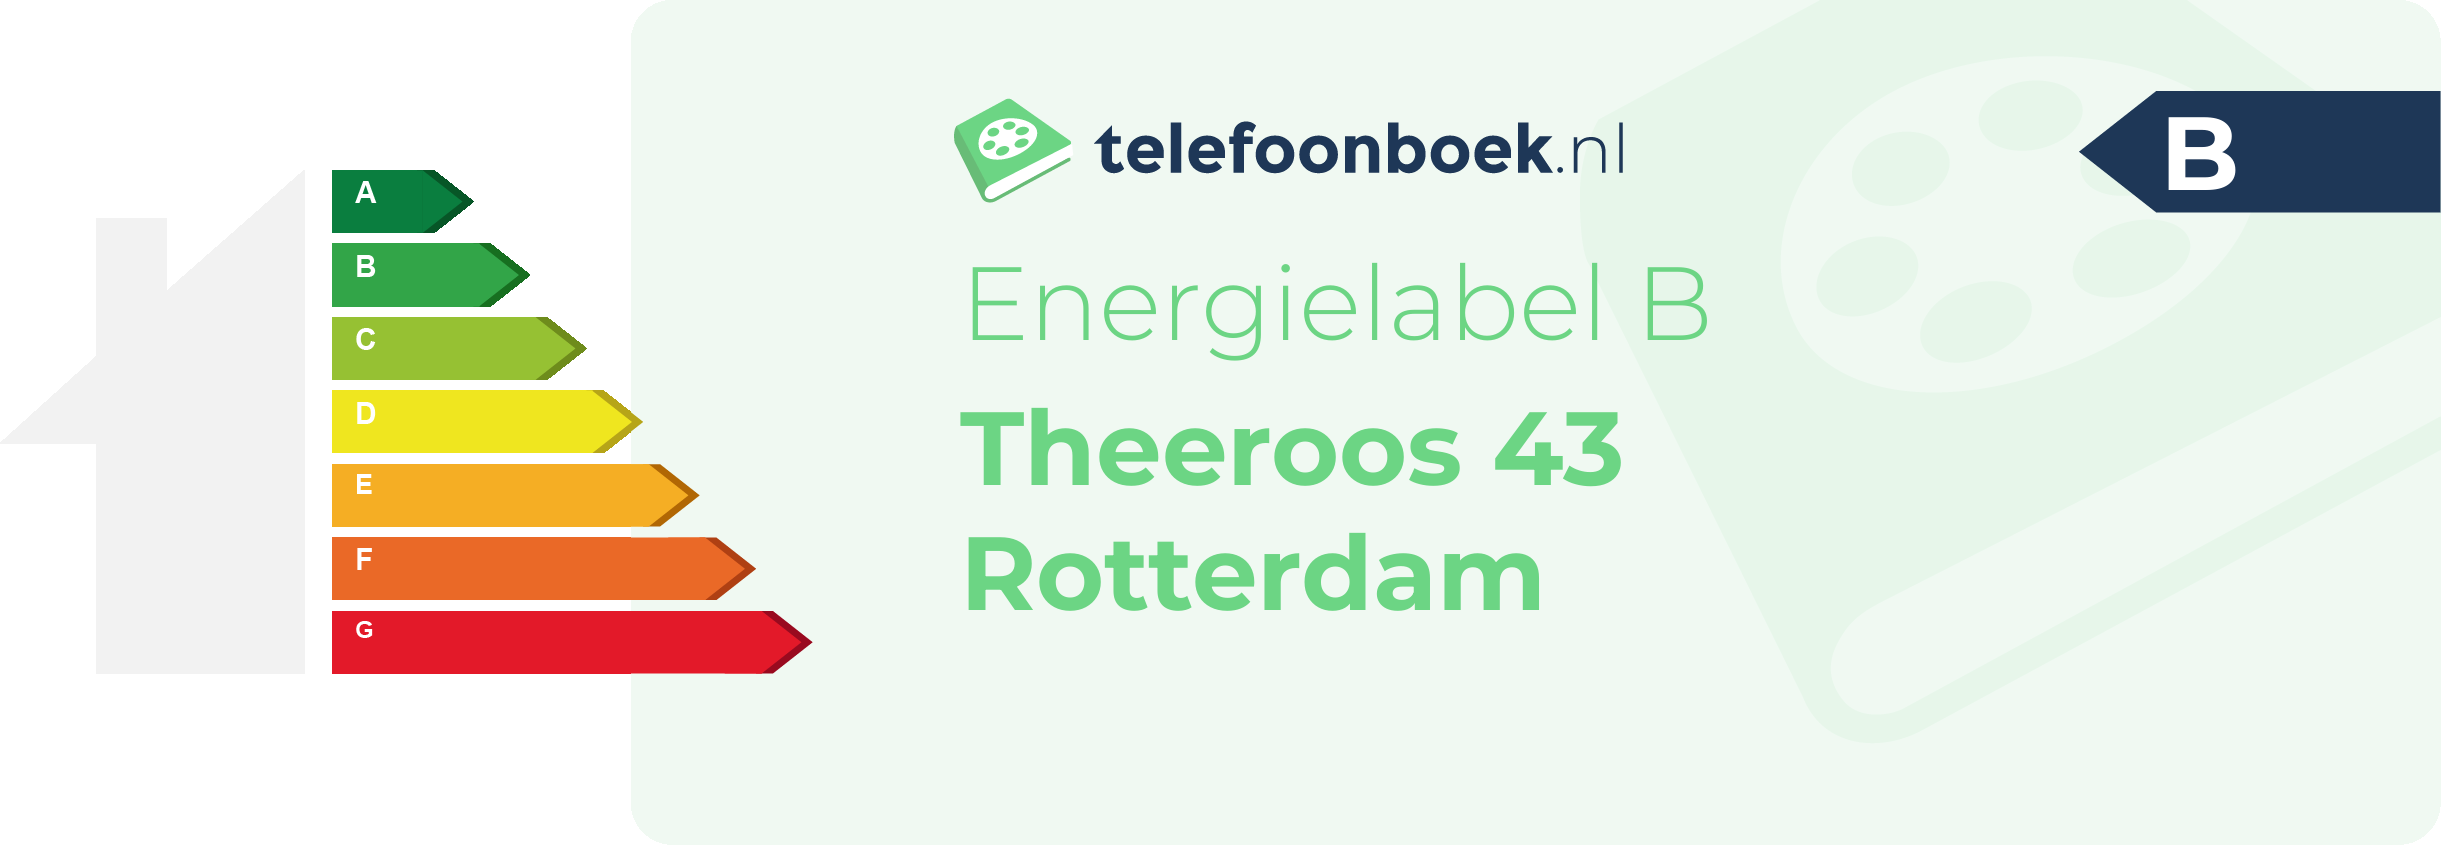 Energielabel Theeroos 43 Rotterdam